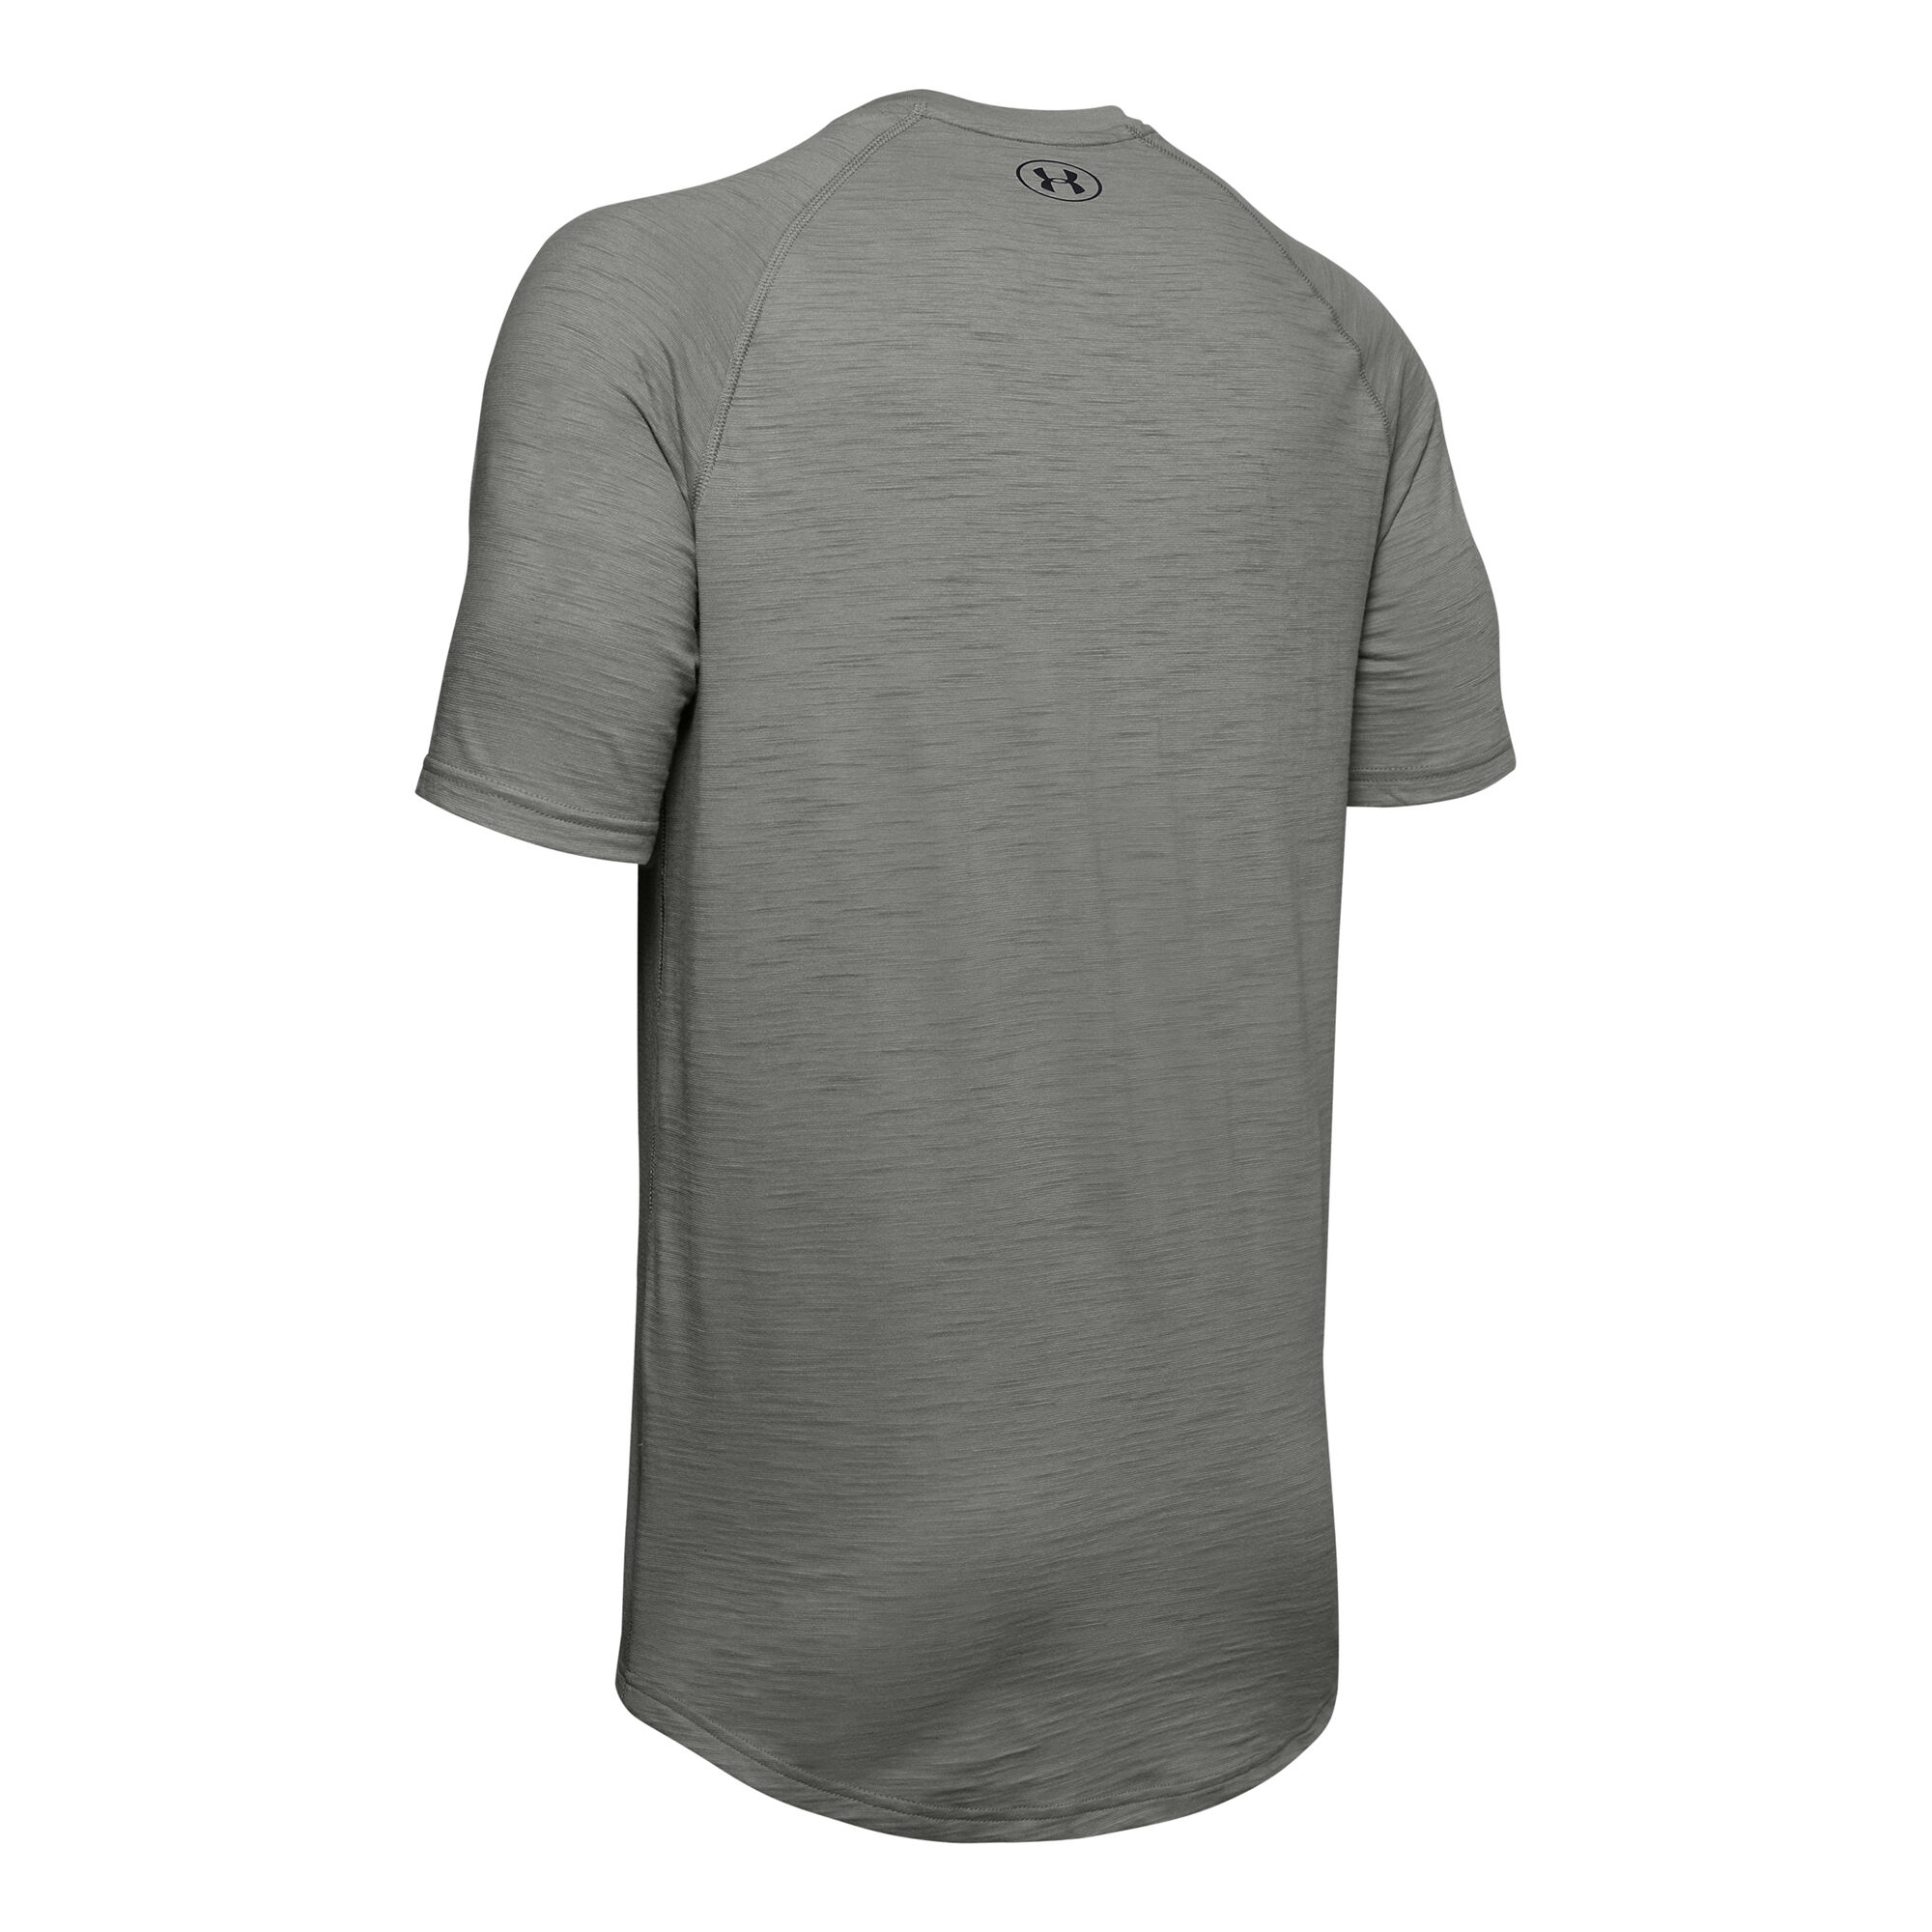 buy Under Armour Charged Cotton T-Shirt Men - Khaki, Black online ...